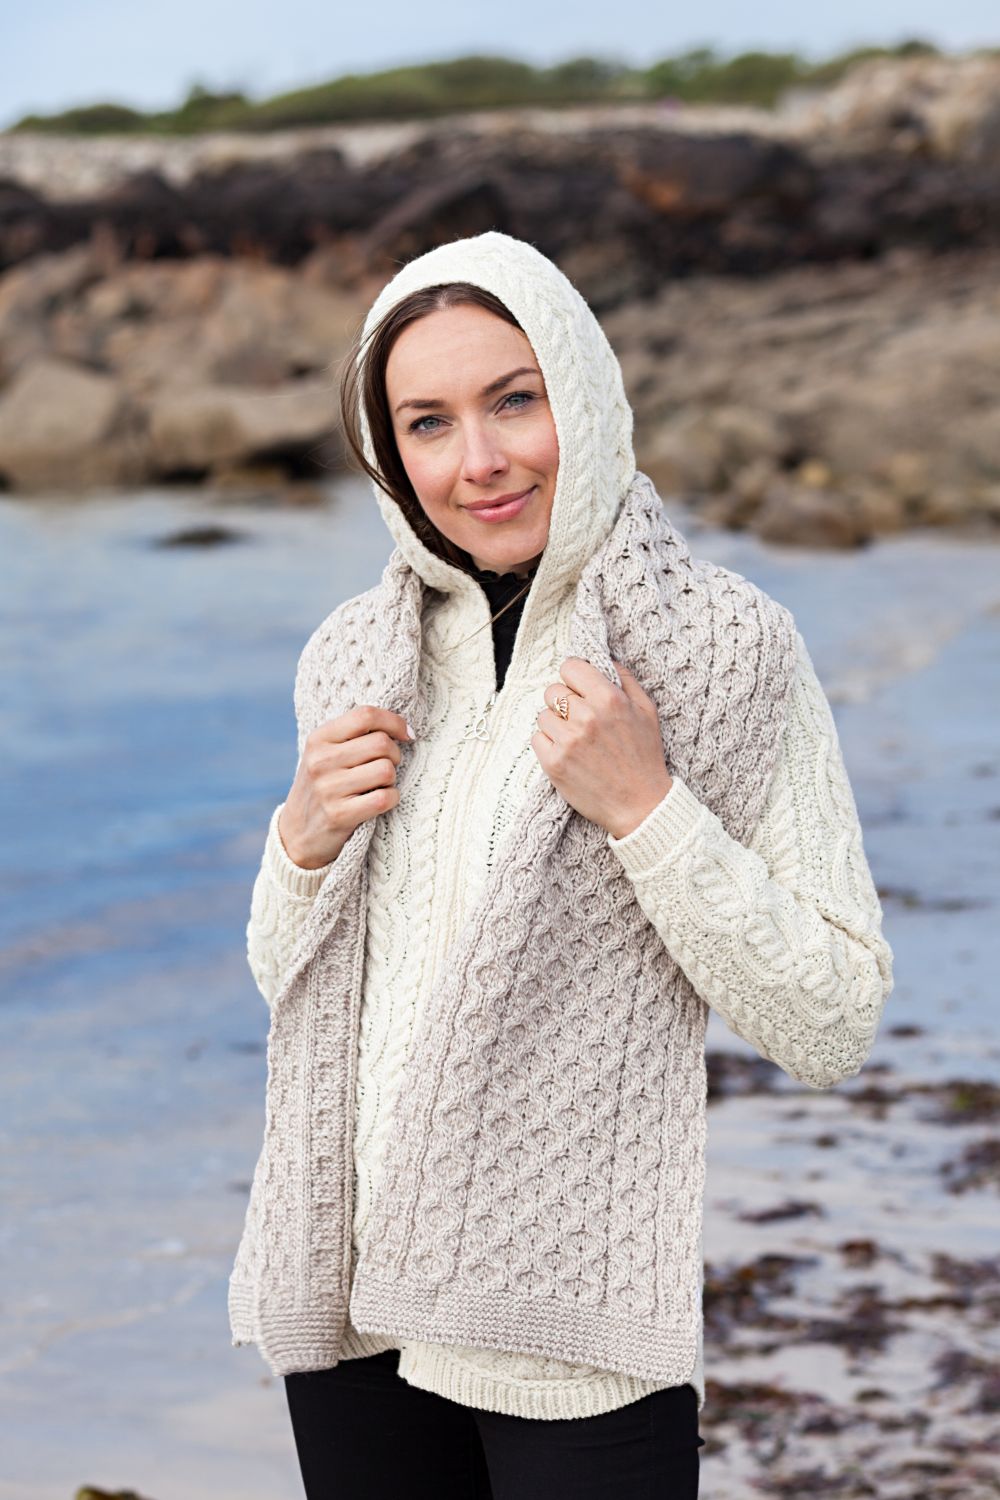 Aran Islands Knitwear - Buy Aran Sweaters - Free Shipping from Ireland